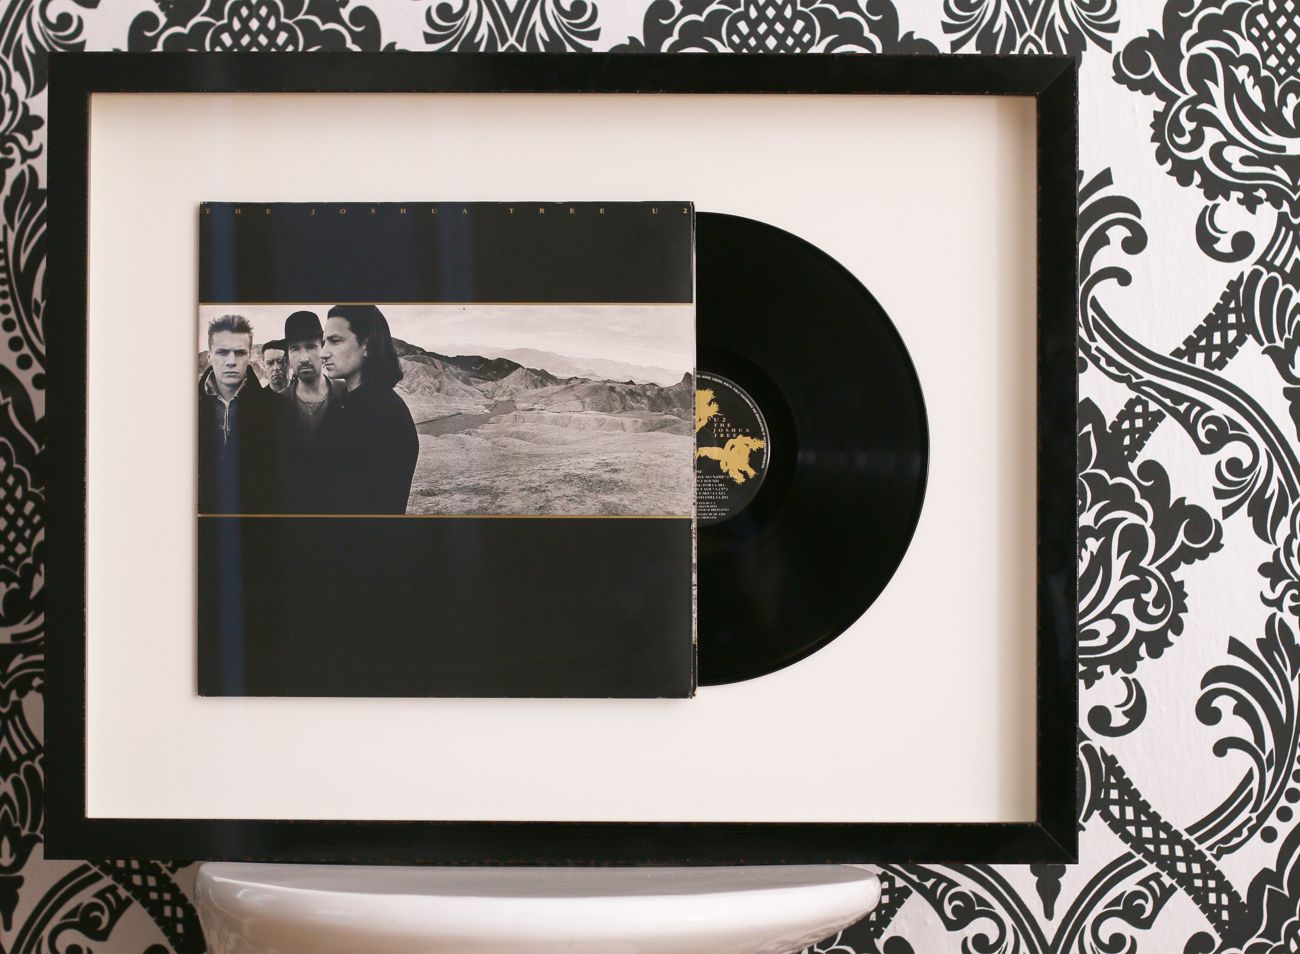 Moderní prostorové rámování Vinylu LP U2 The Joshua Tree do černého rámu | © Frame-it.cz